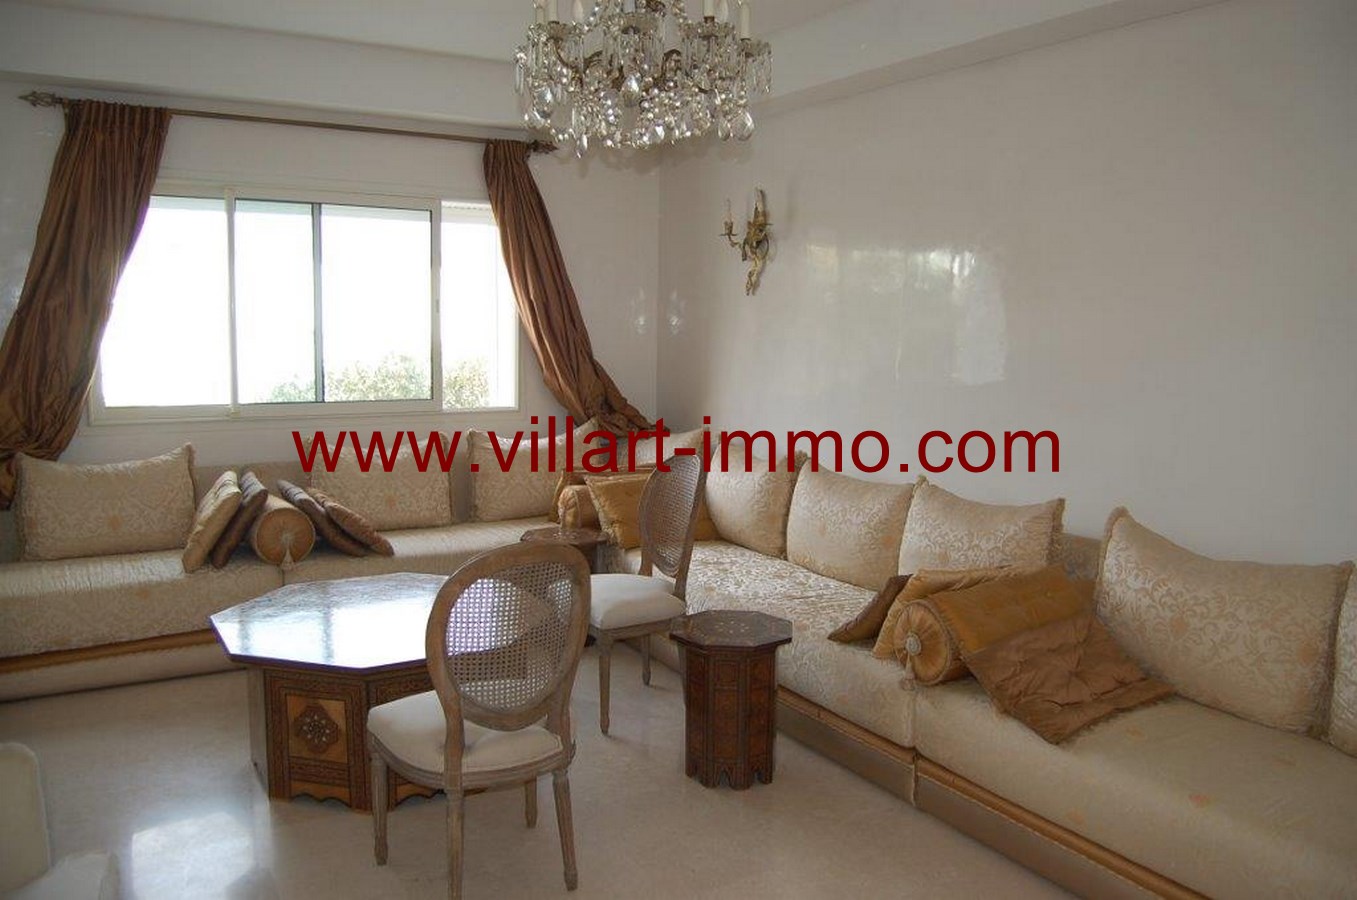 1-location-villa-non-meublee-tanger-salon-lv1000-villart-immo